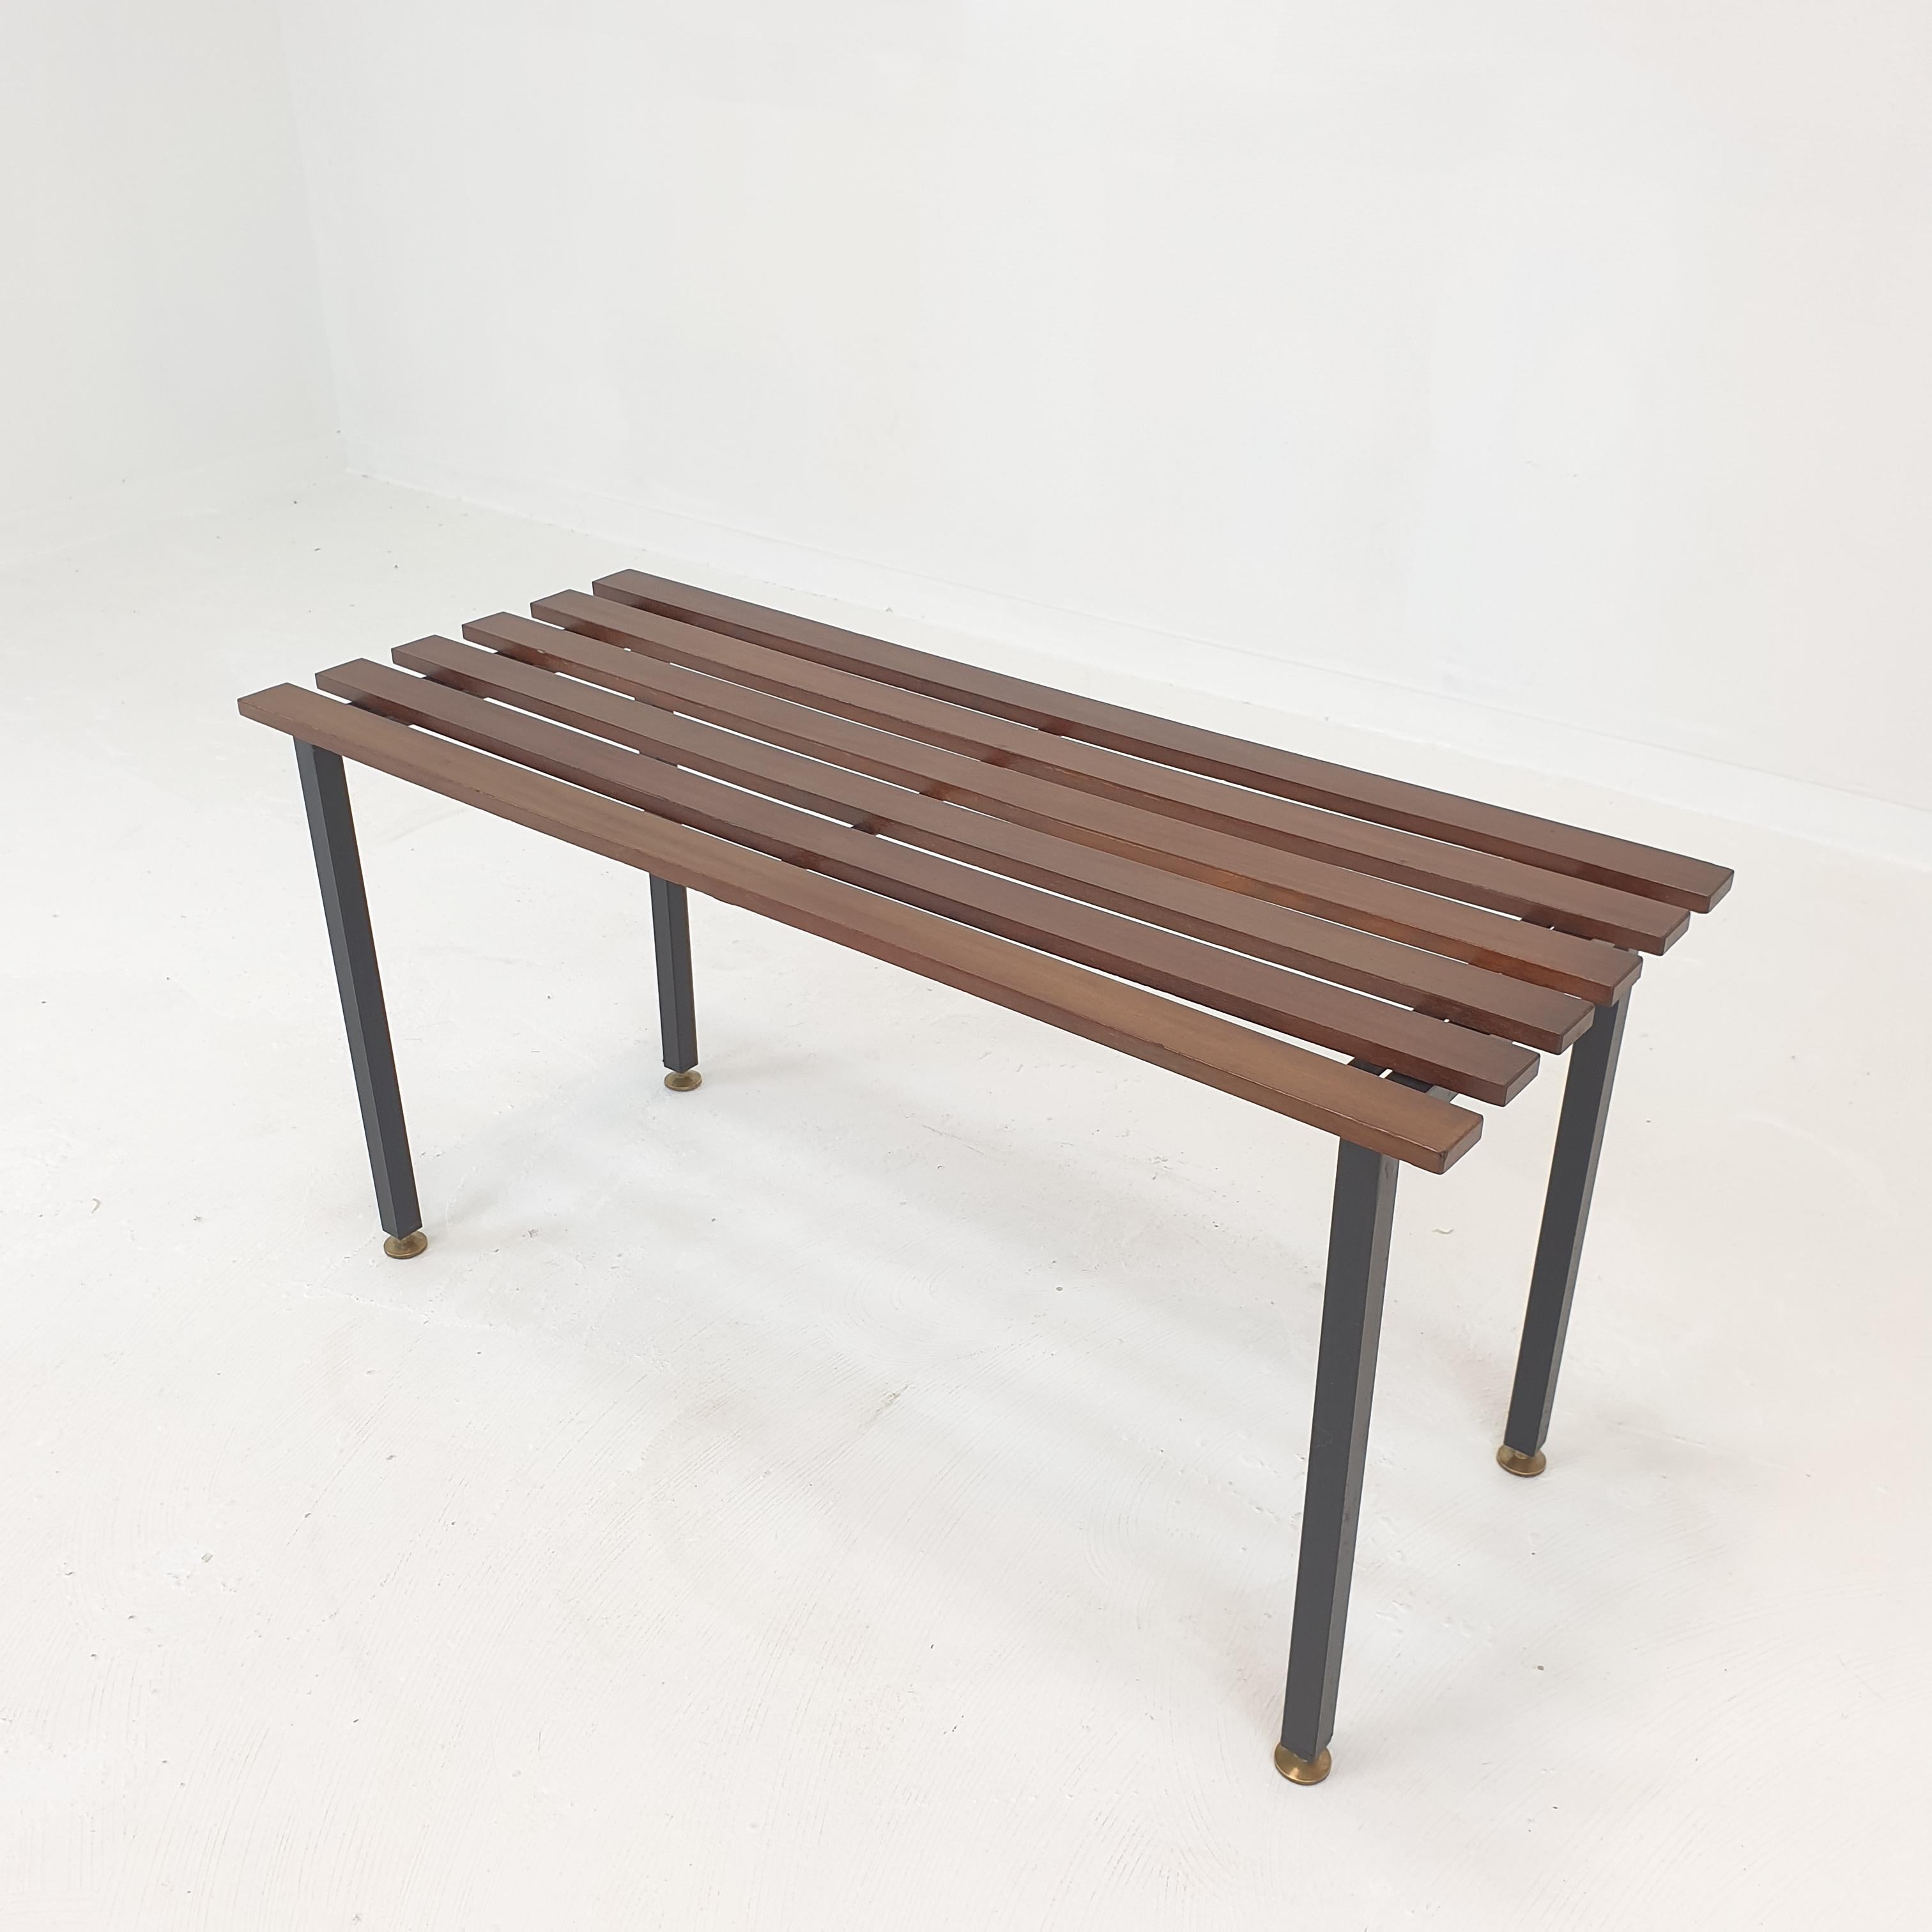 Très beau banc ou table d'appoint italien fabriqué dans les années 1950. 

Assise en bois de teck avec une structure en métal noir et des pieds réglables en laiton.